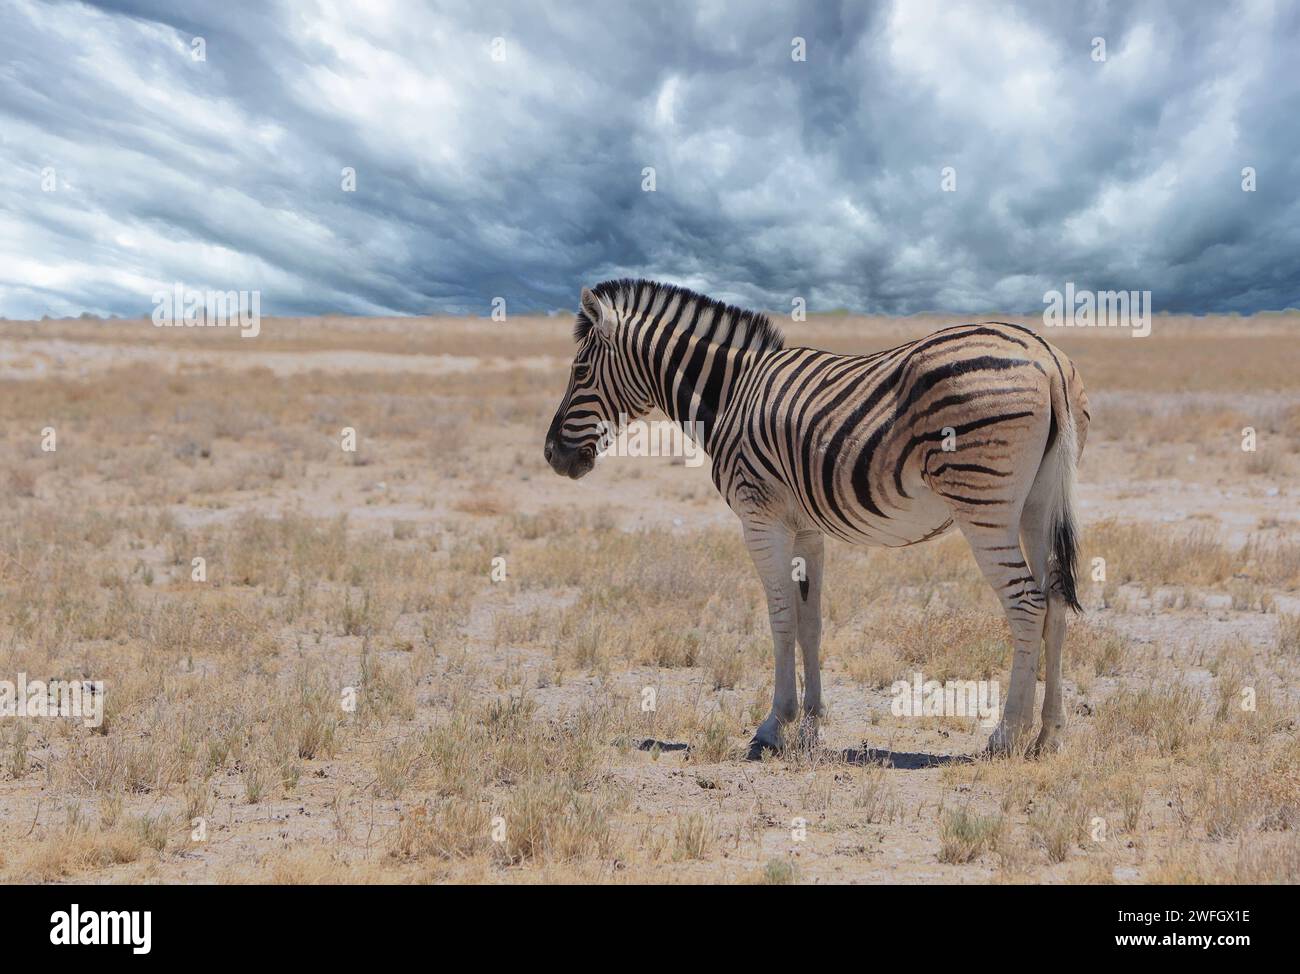 Ein einsames Zebra, das auf den riesigen offenen, leeren, trockenen afrikanischen Ebenen steht, mit einem stürmischen dramatischen Hintergrund Stockfoto